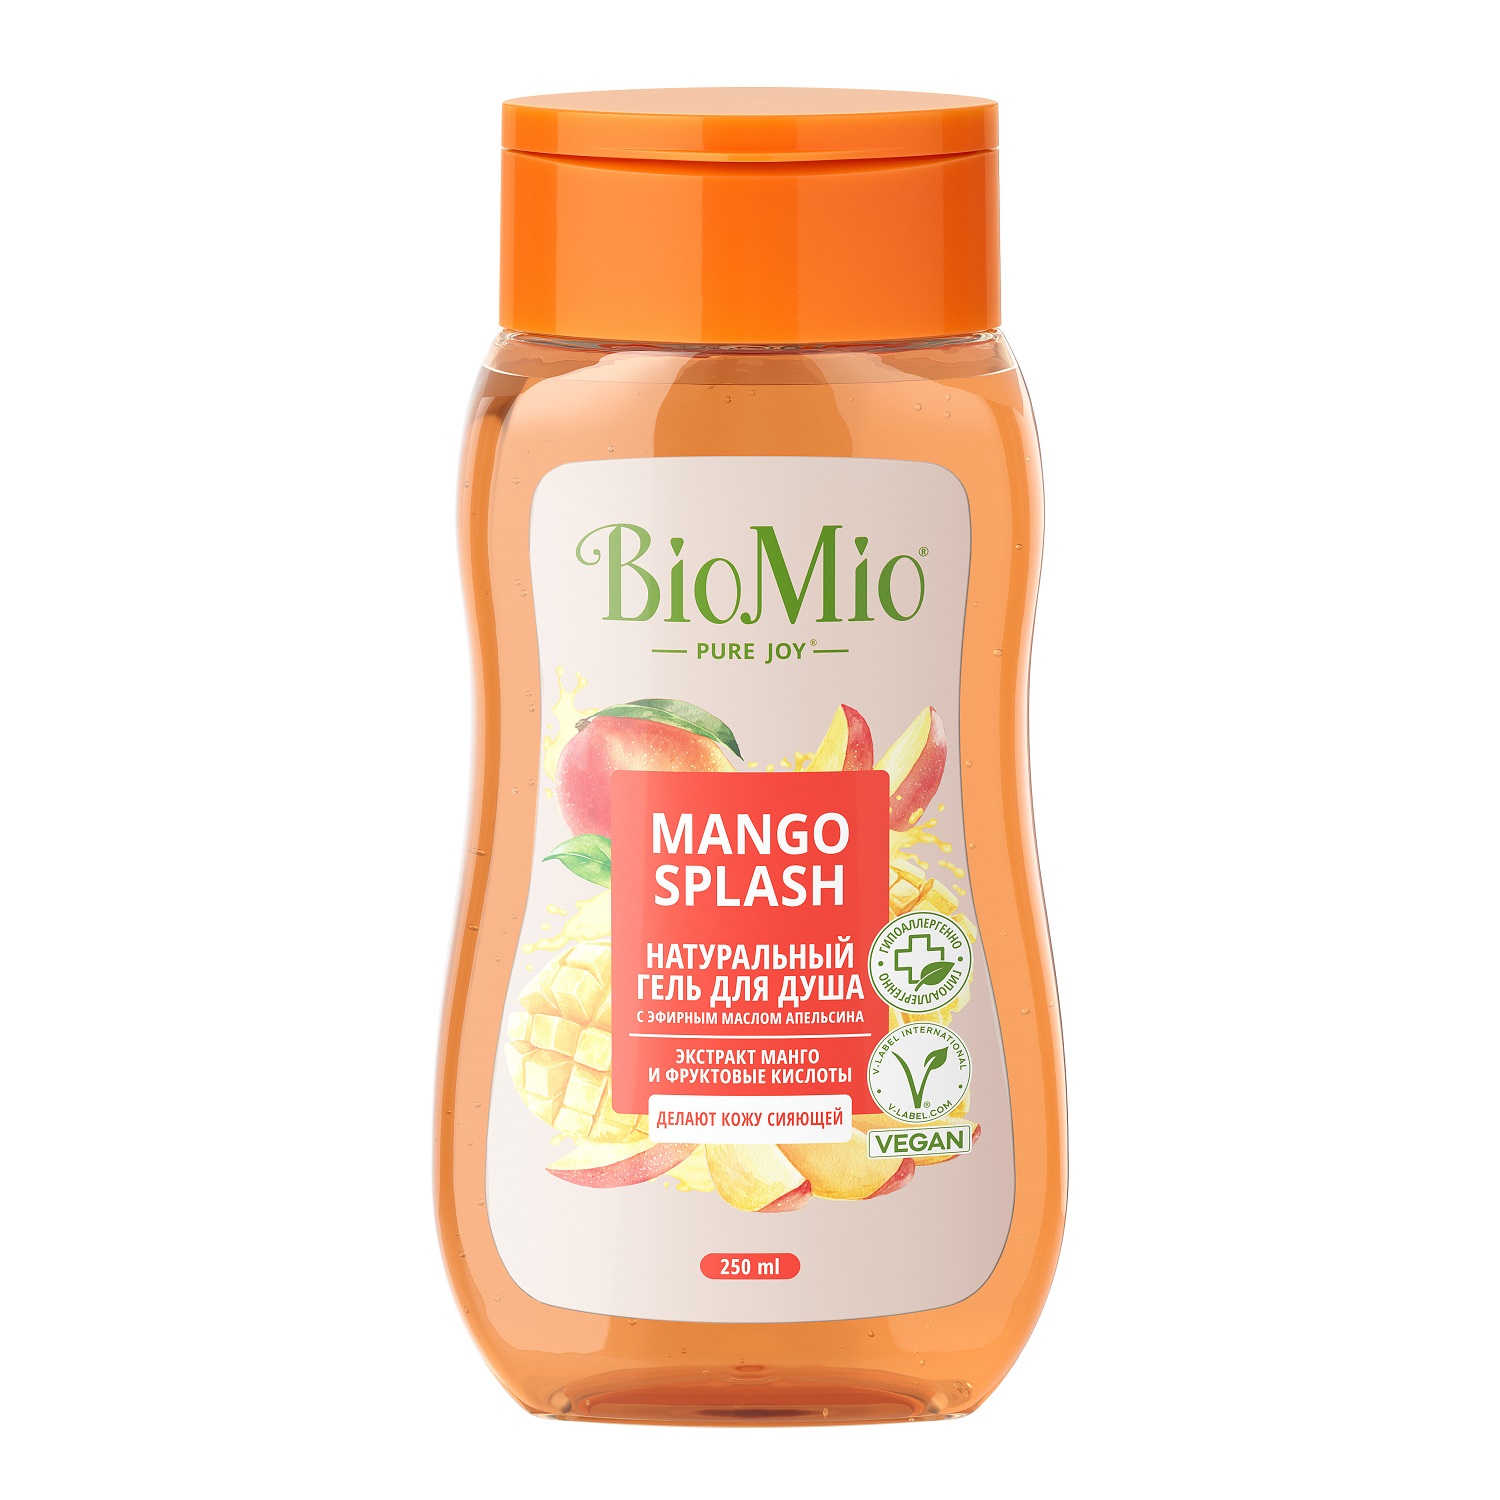 BioMio Гель для душа с экстрактом манго Mango Splash, 250 мл (BioMio, Для ванны и душа) гель для душа biomio с экстрактом манго 250 мл